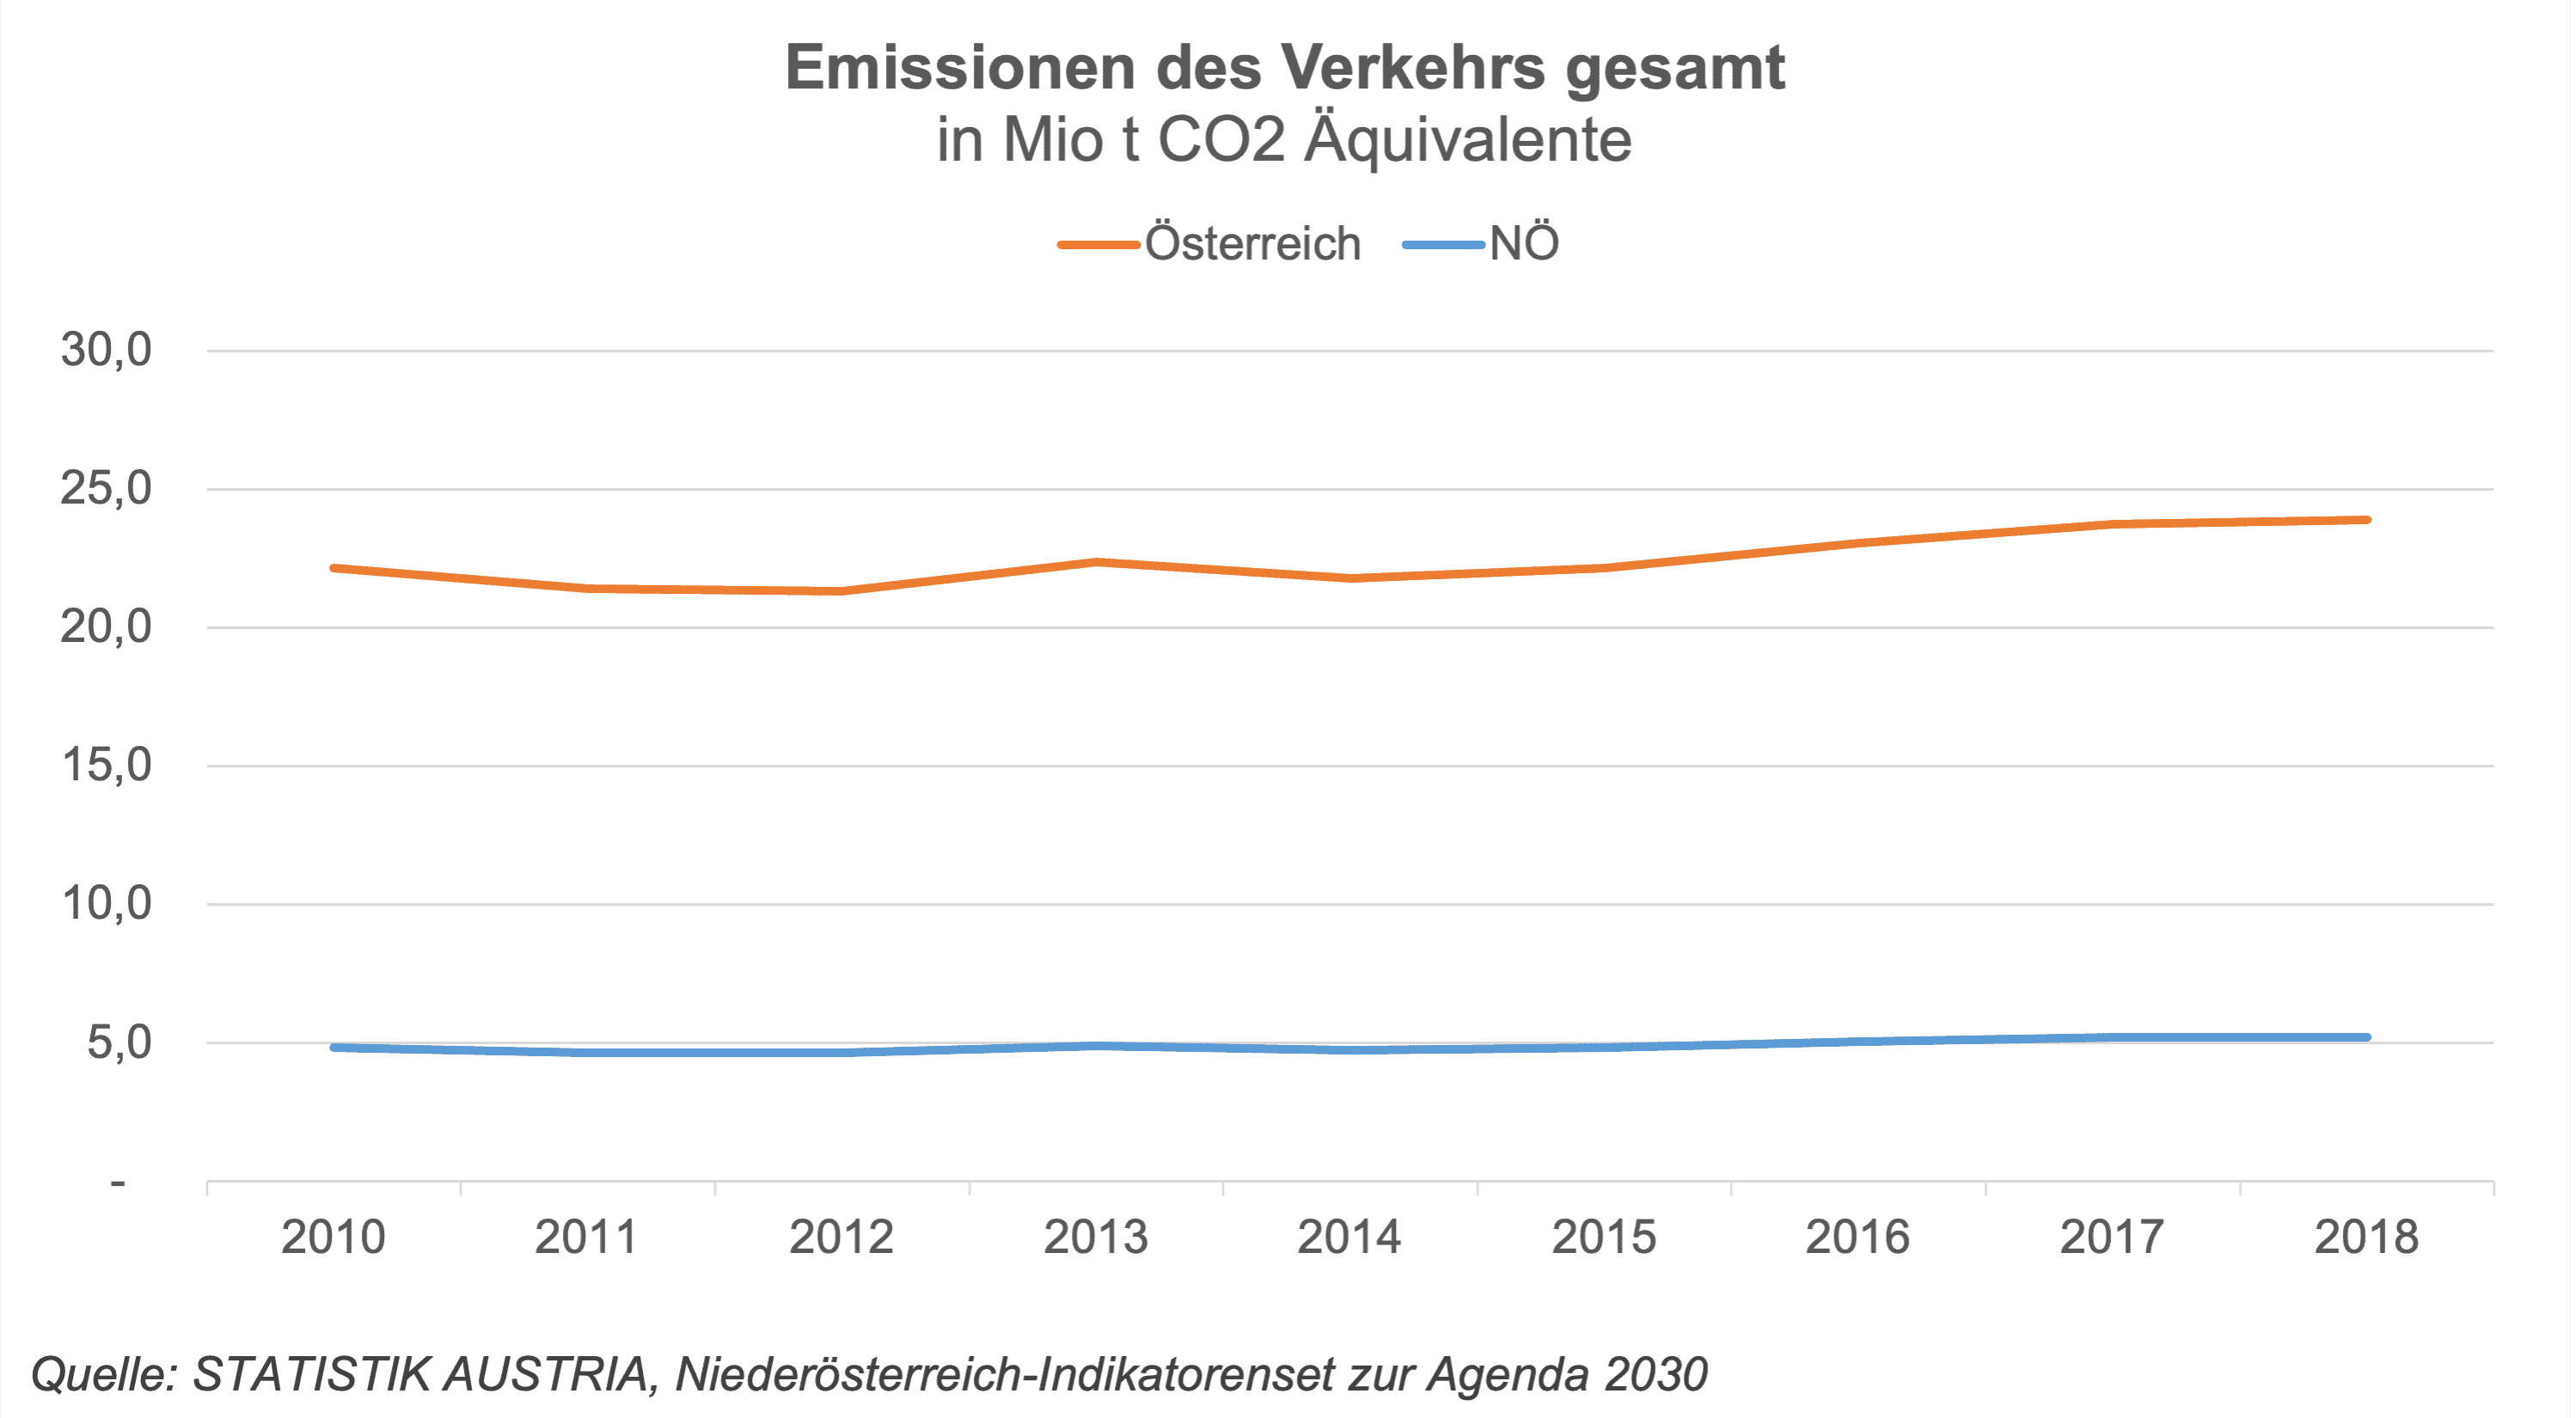 Die CO2 Emissionen im Verkehr haben seit 2010 stetig zugenommen. Der Verkehr ist für ca. 1/3 des gesamten Kohlendioxid-Ausstoßes verantwortlich.